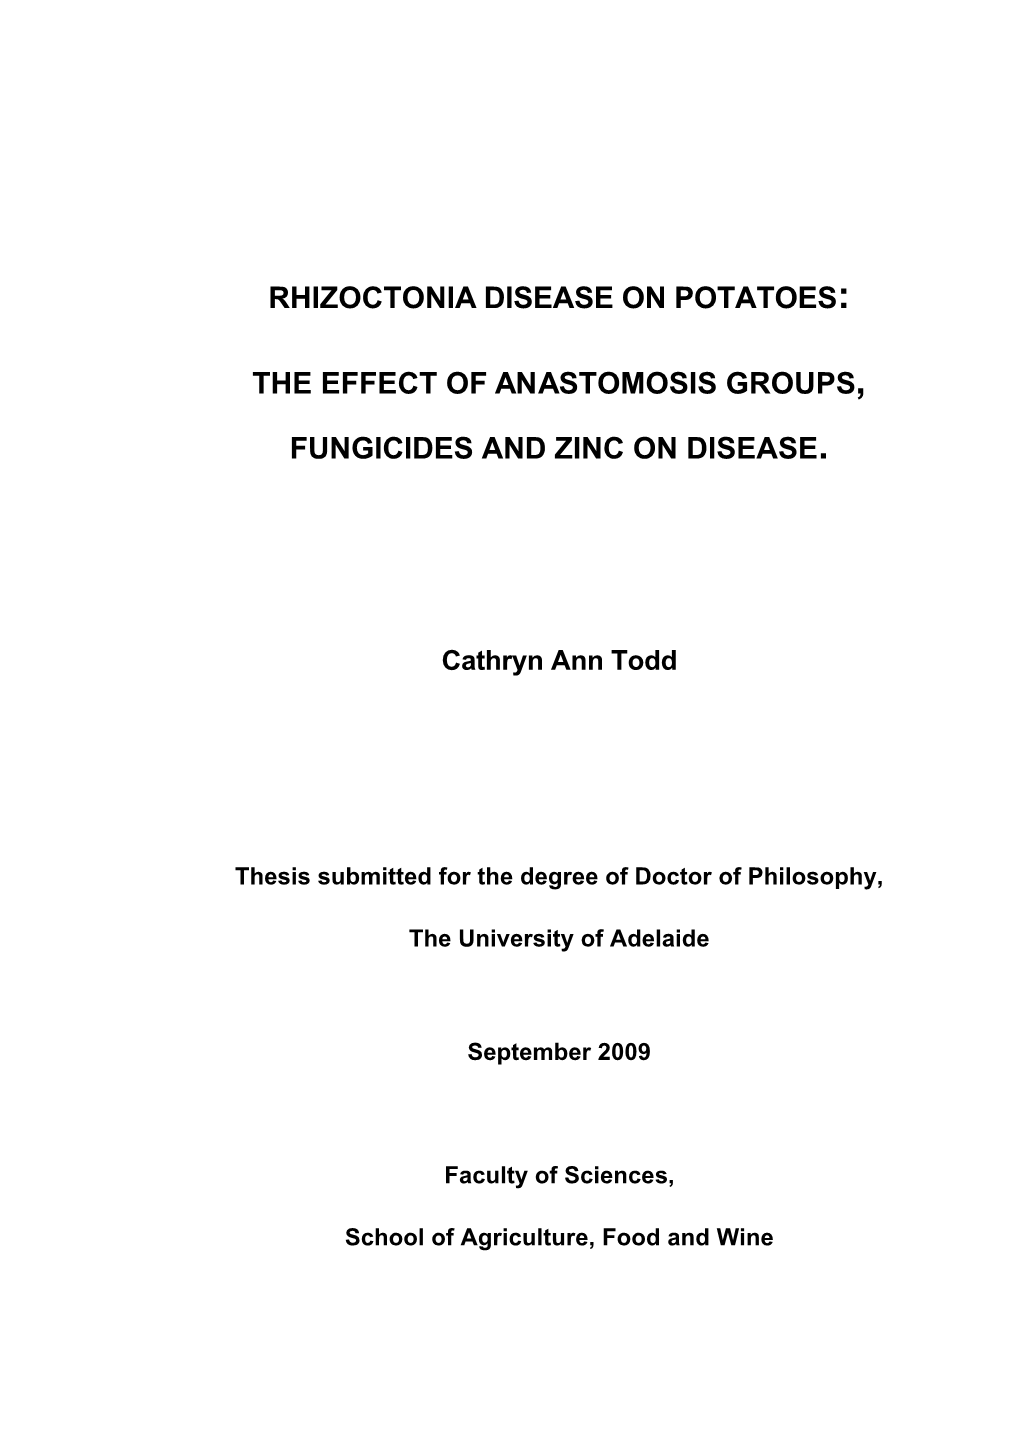 Rhizoctonia Disease on Potatoes: the Effect of Anastomosis Groups